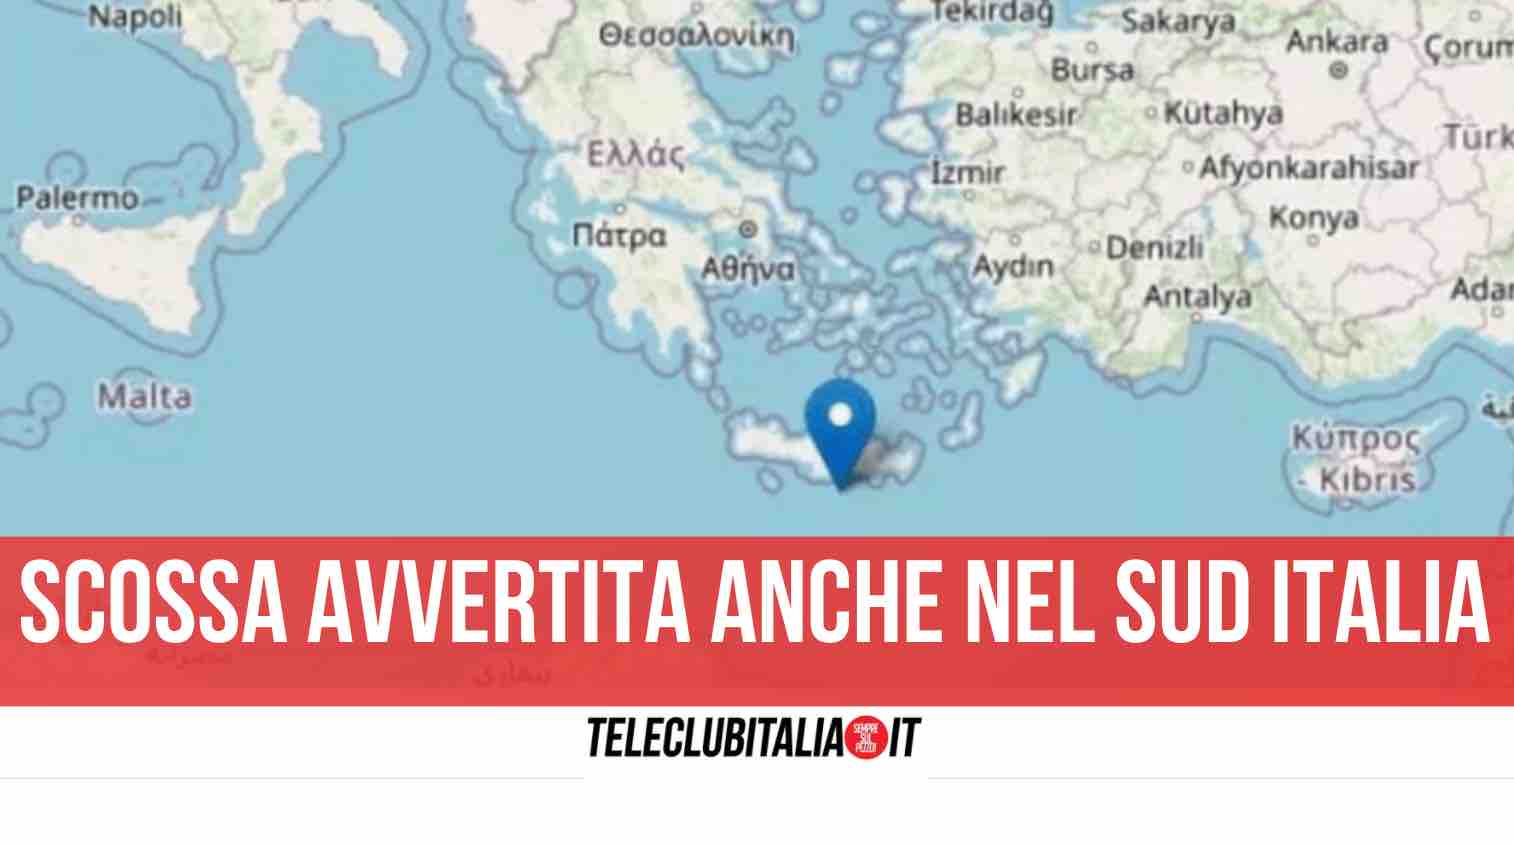 terremoto grecia magnitudo 5.5